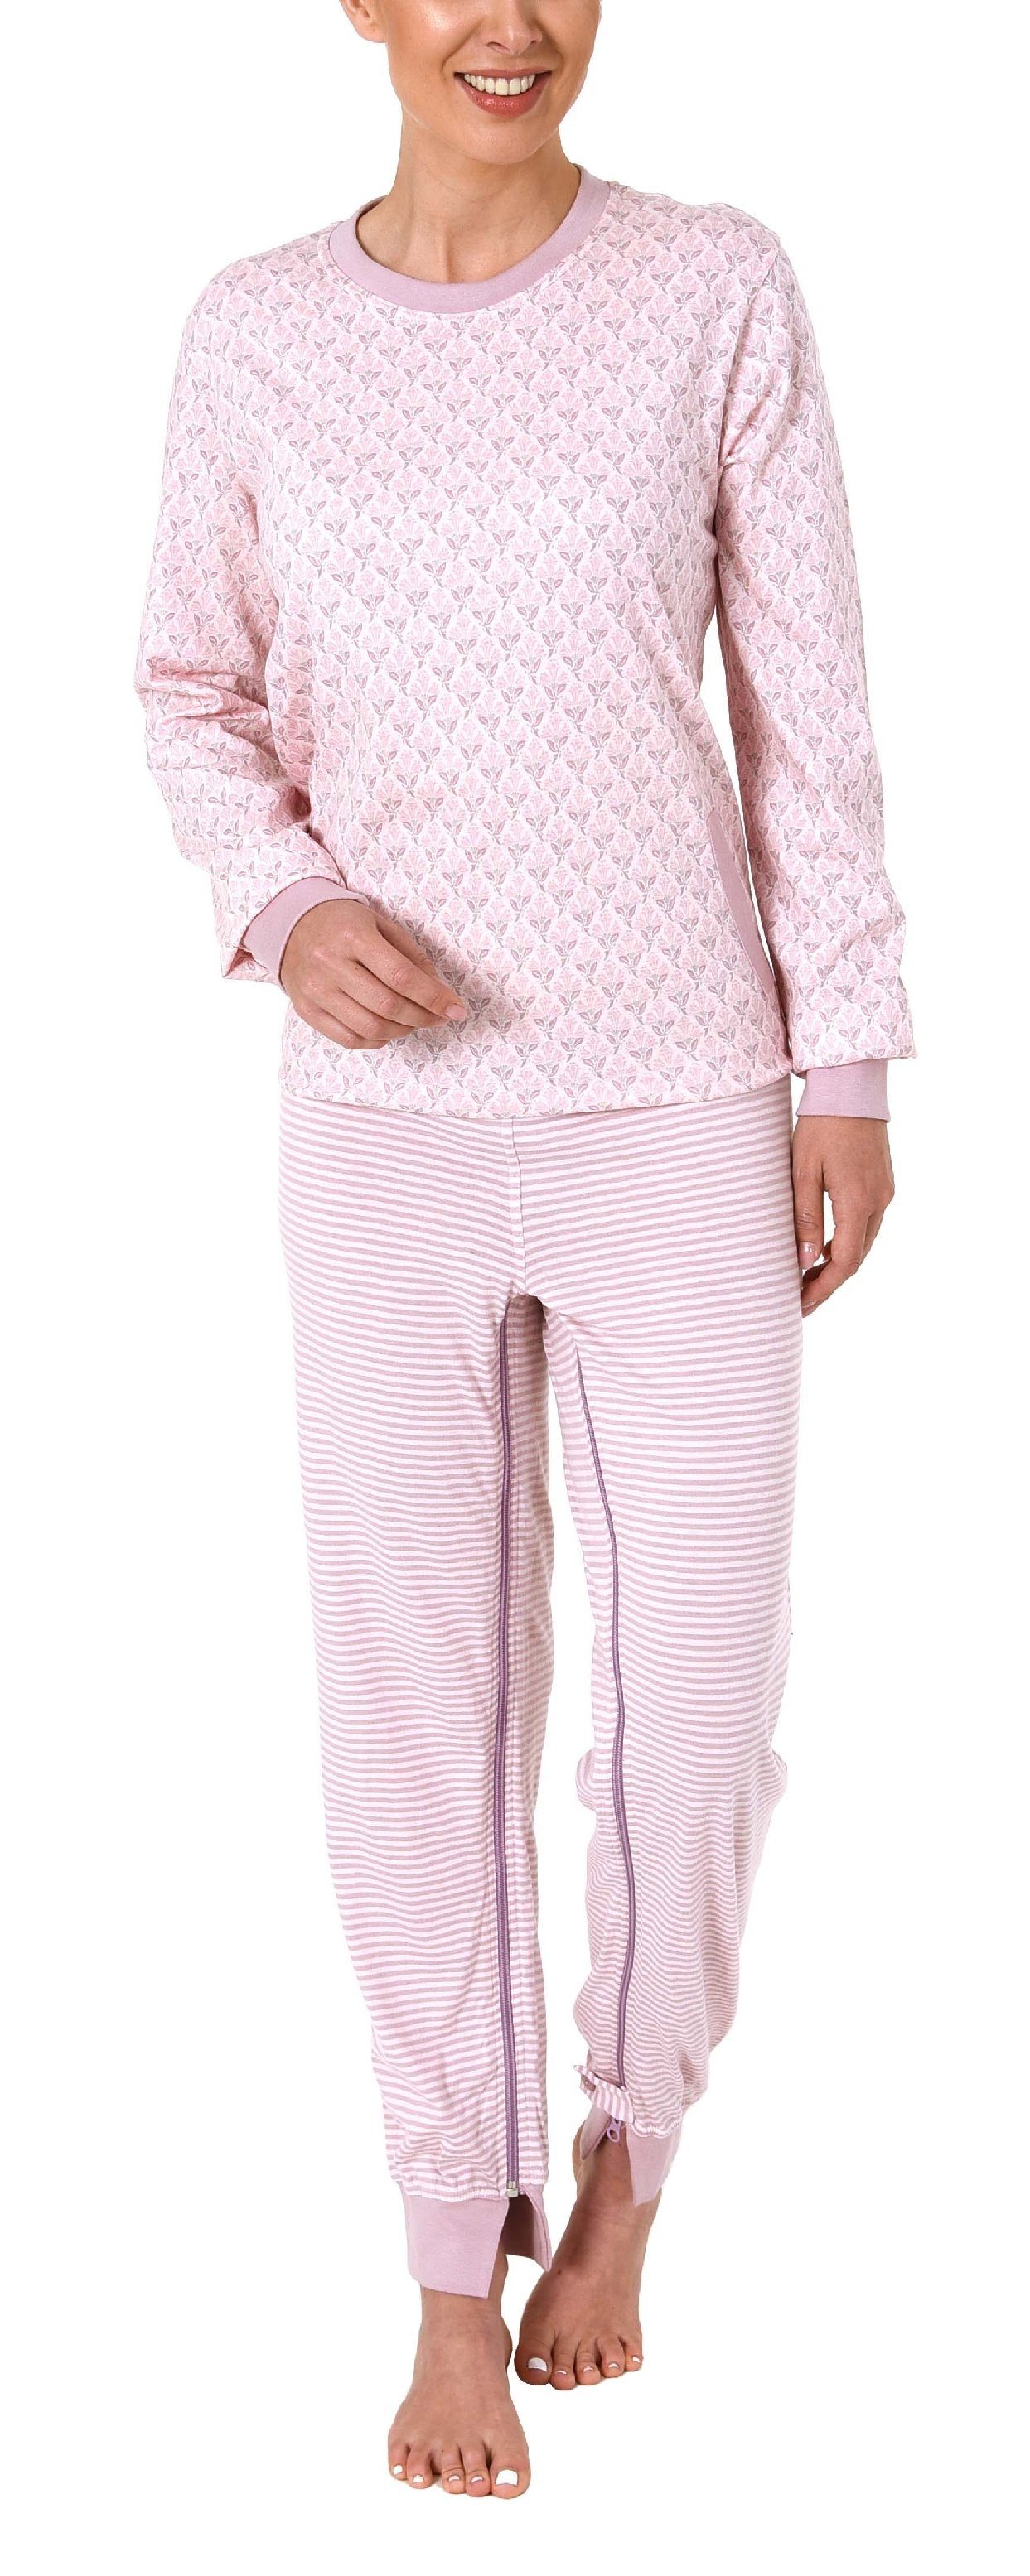 Normann Care Pyjama Damen am Rücken mit Reißverschluss Bein Pflegeoverall und langarm am